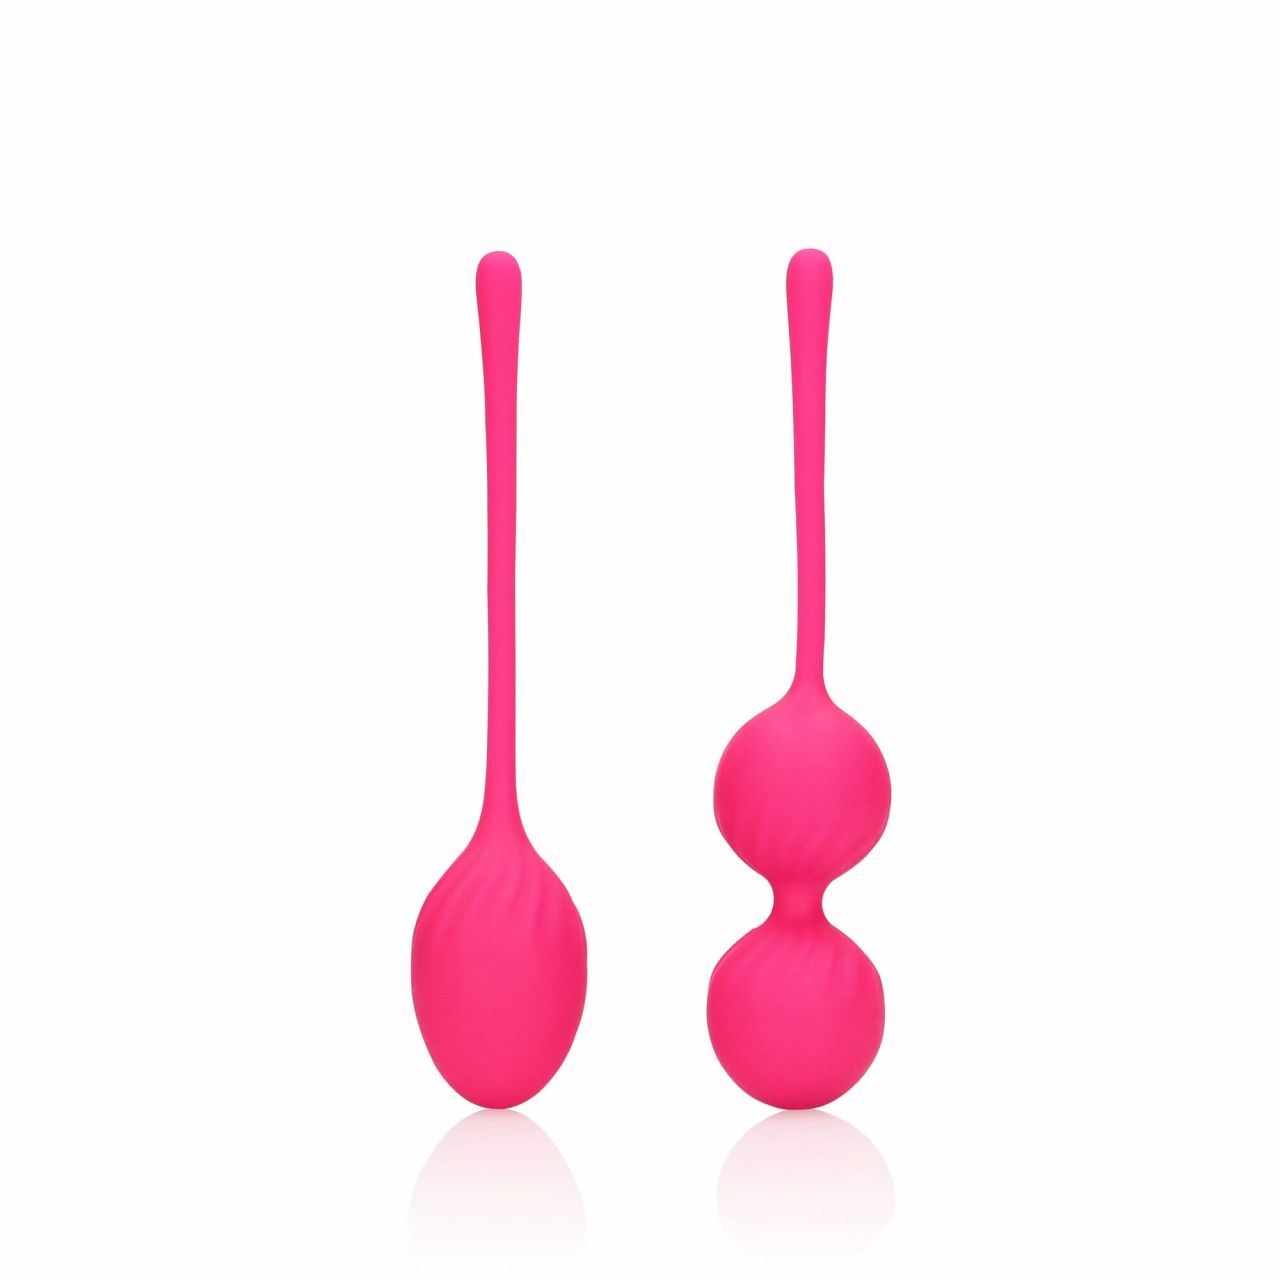 Loveline - súlyozott gésagolyó szett - 2 részes (pink)